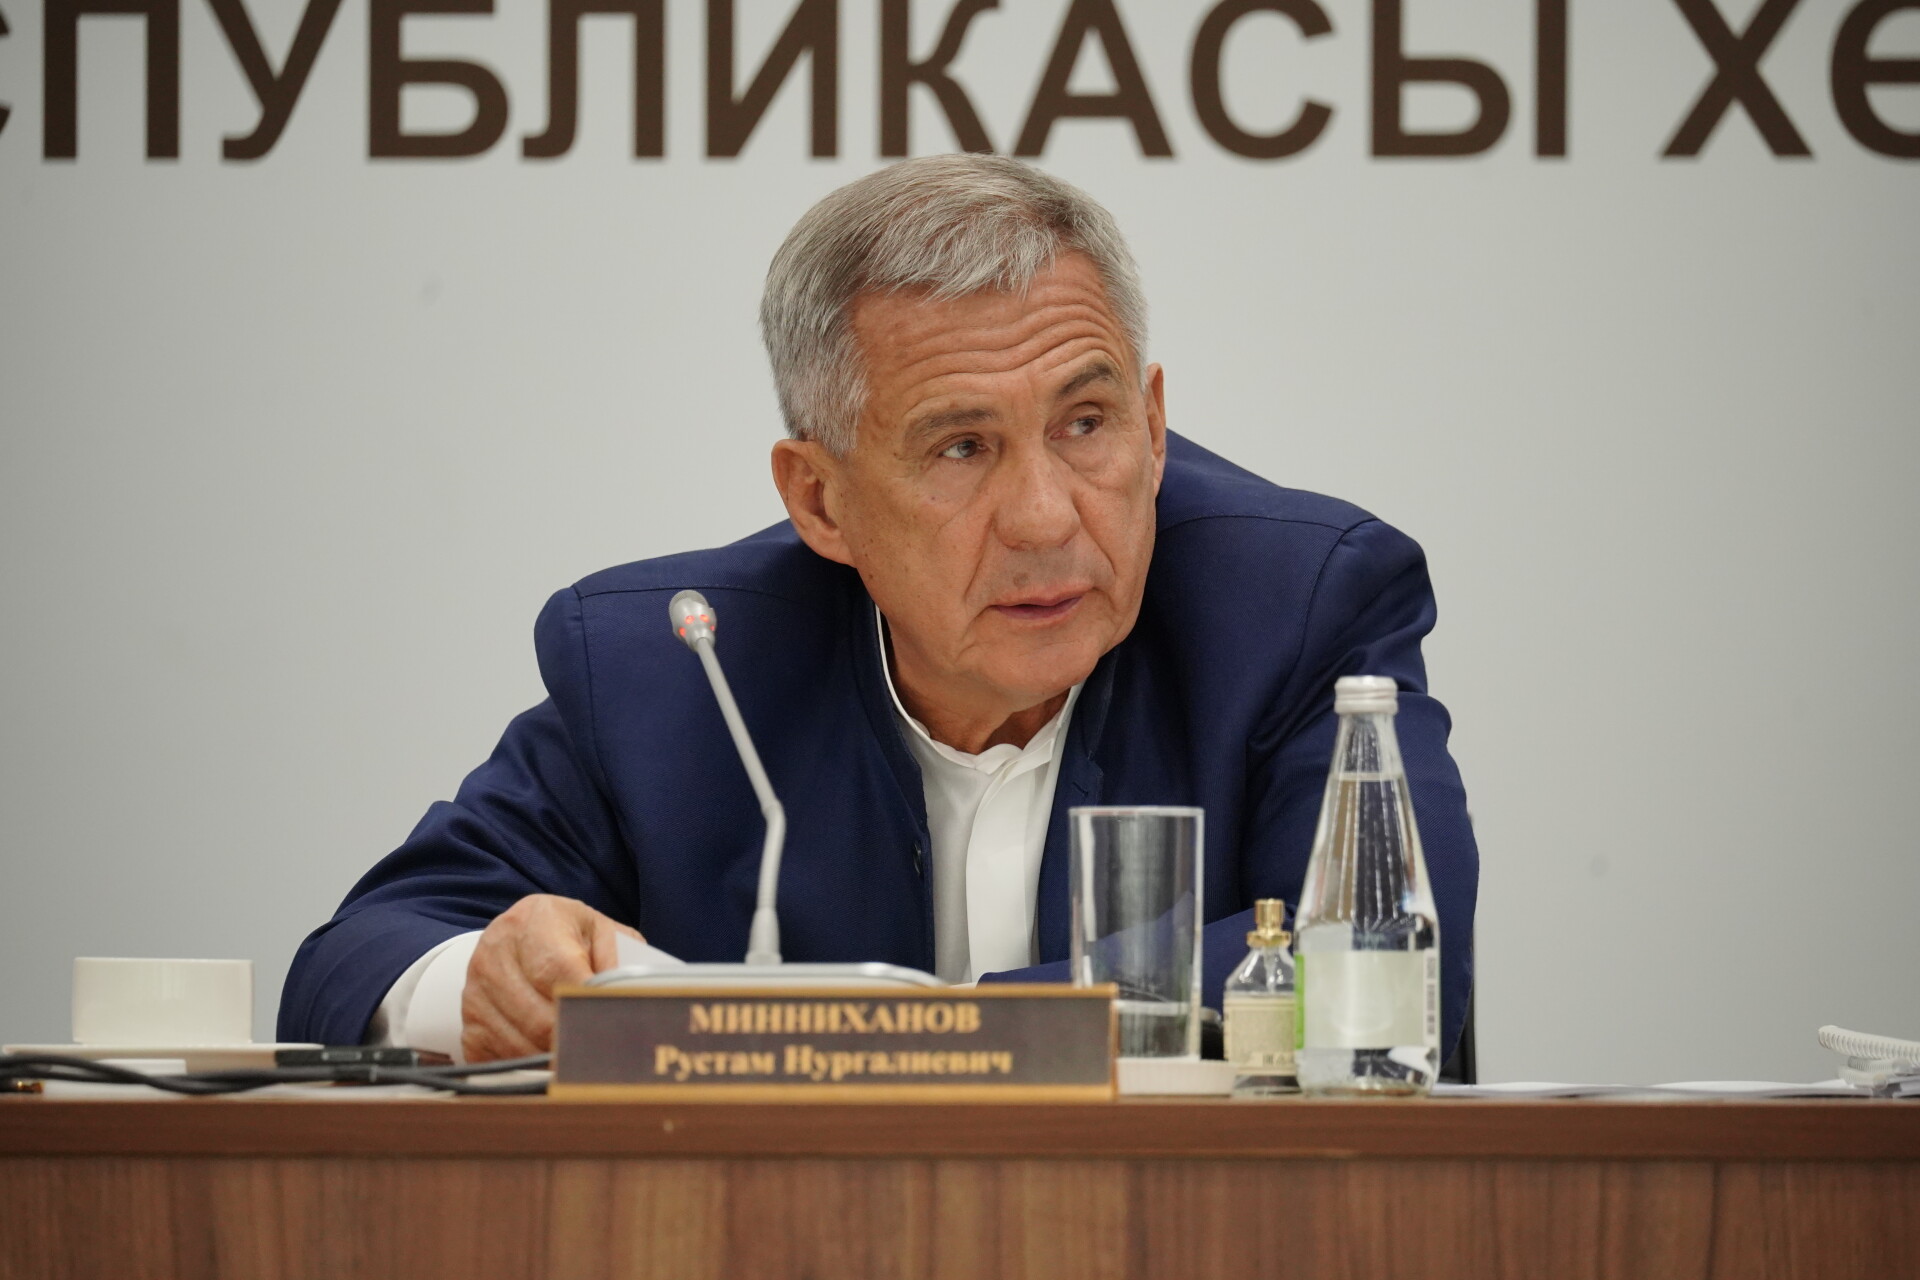 Минниханов встретился с главой Хакасии на Петербургском форуме